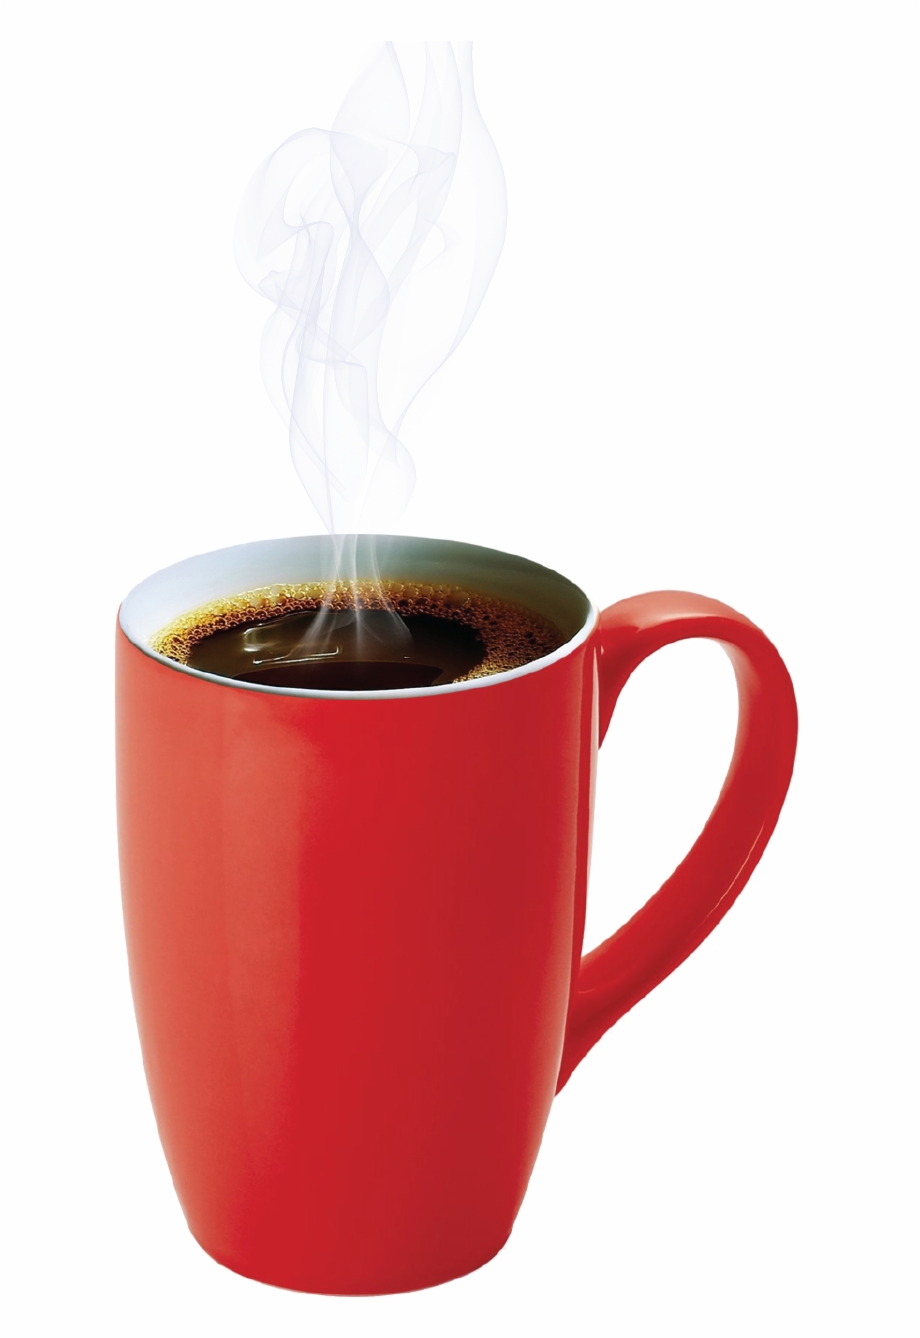 Hot Coffee Steaming Mug Of Coffee